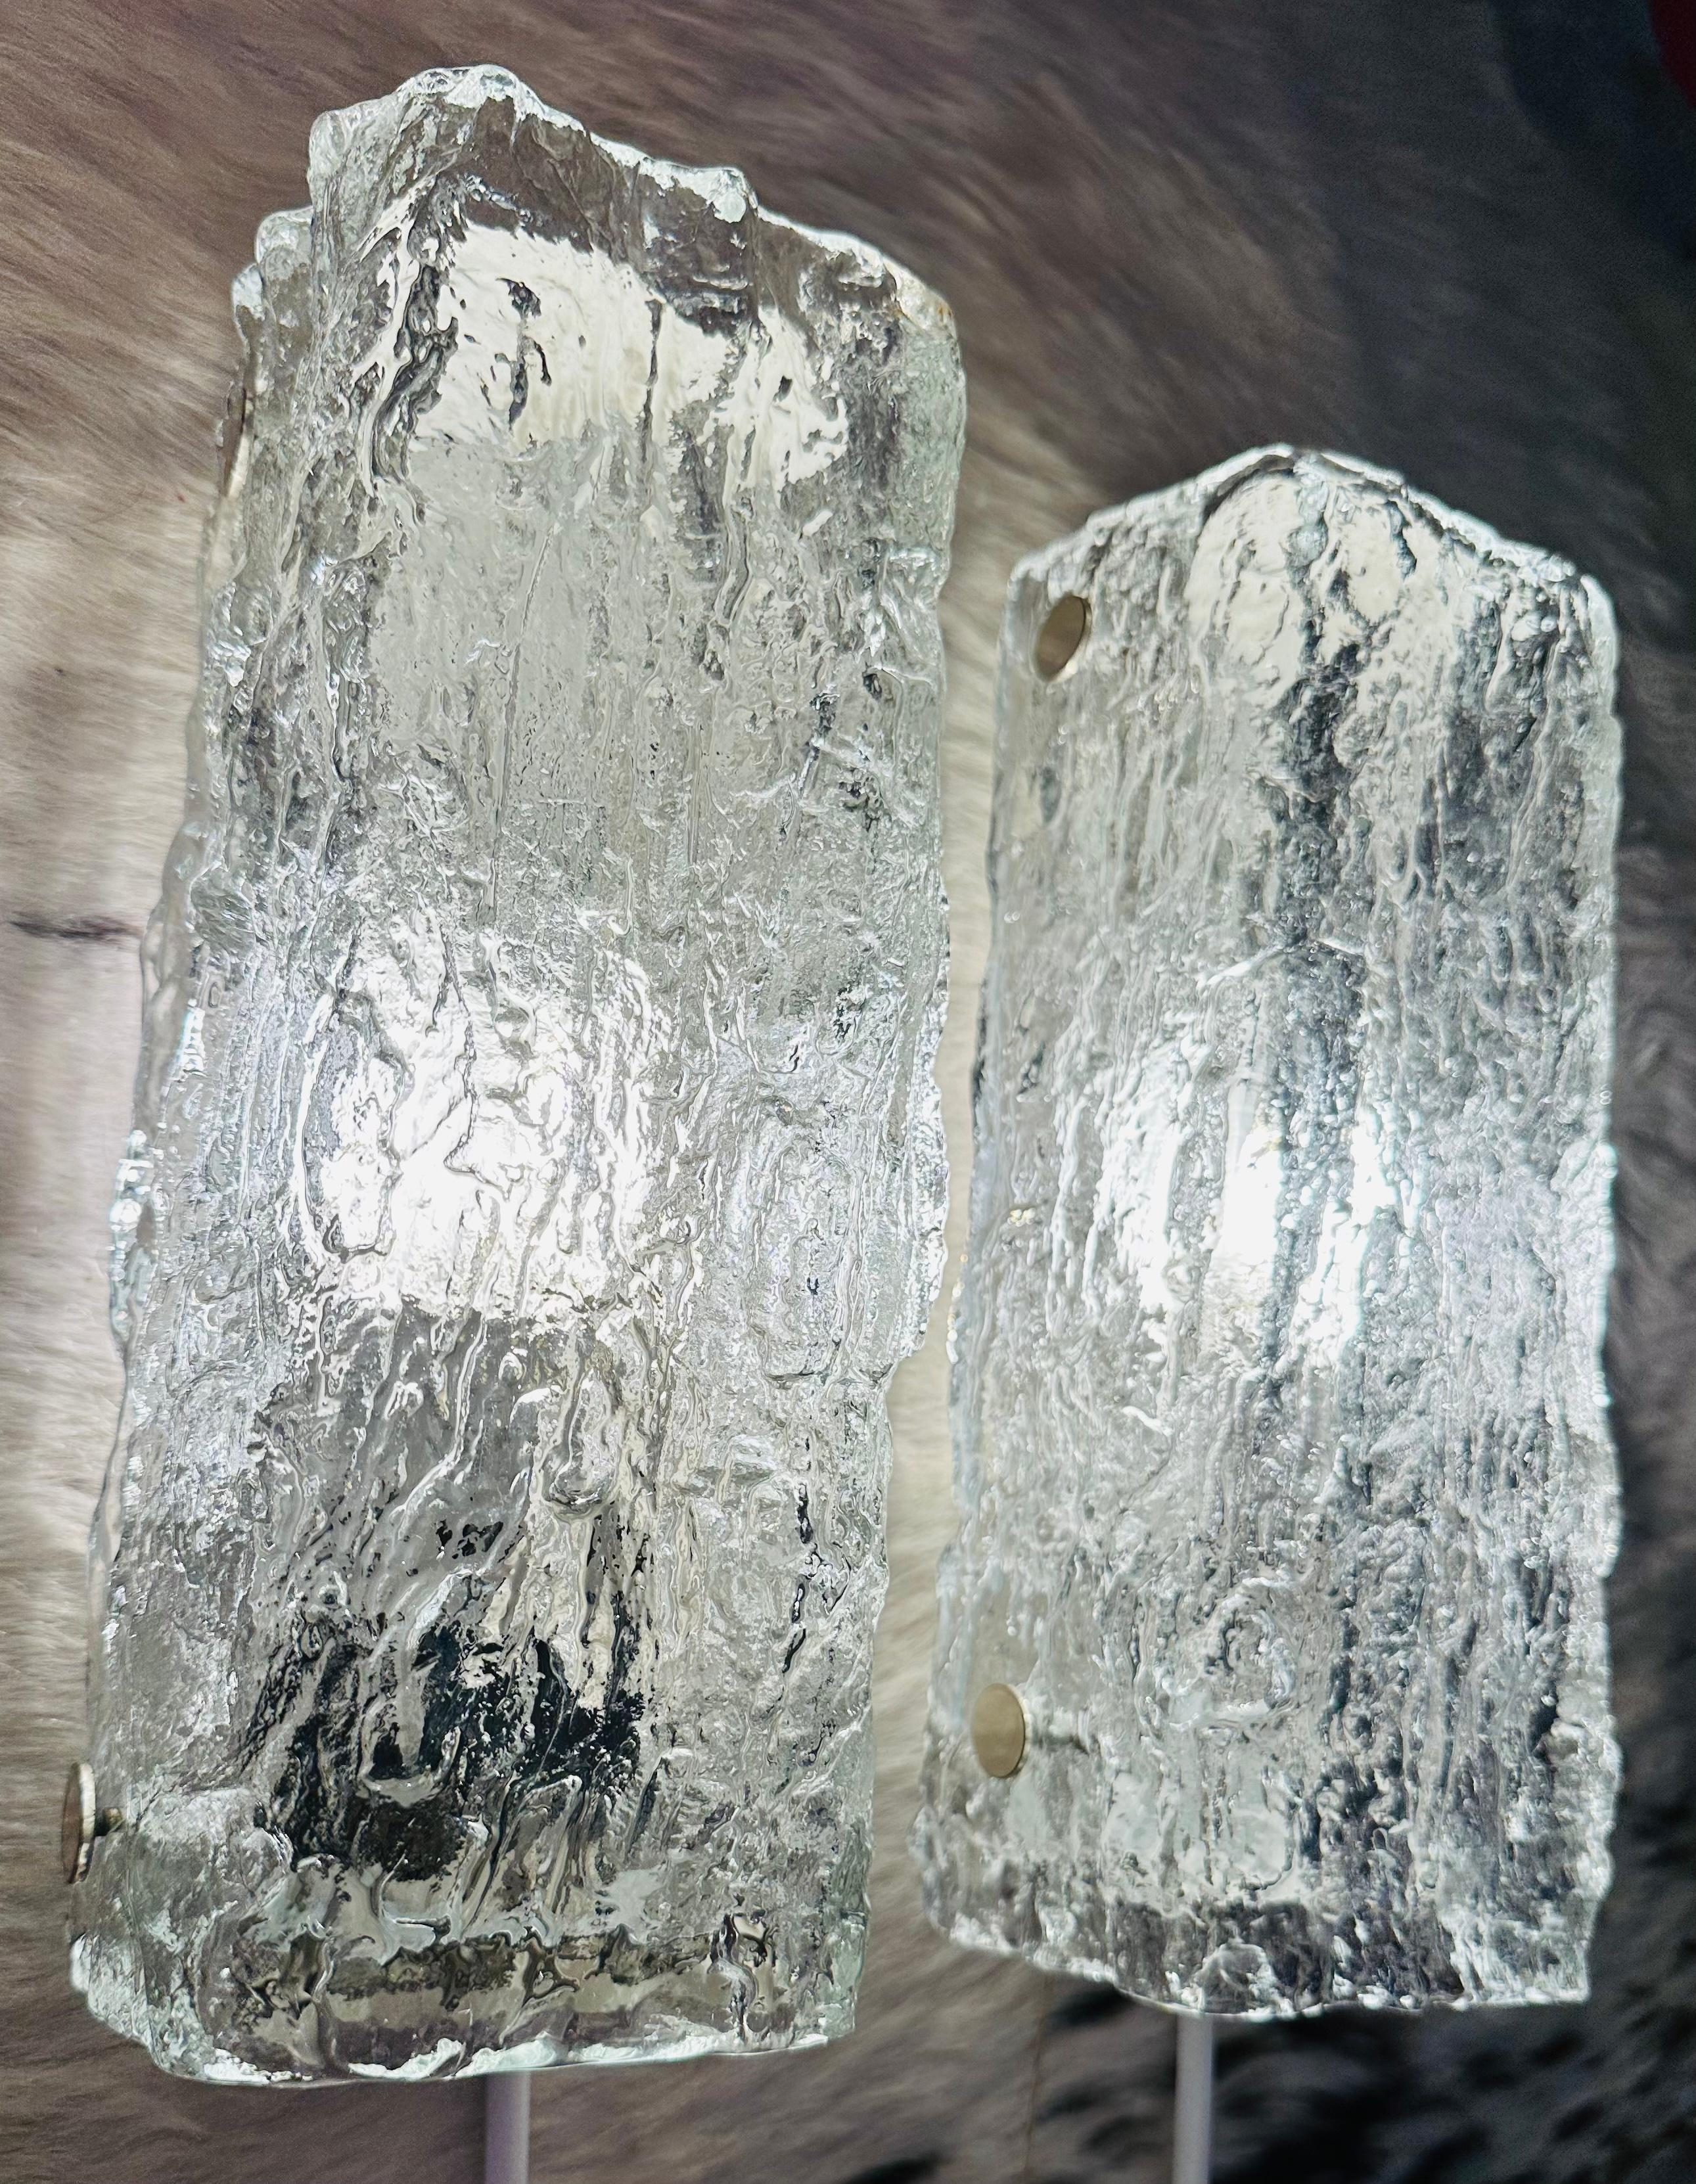 Zwei kleine Wandleuchten aus Eisglas aus den 1970er Jahren, hergestellt von dem gehobenen deutschen Leuchtenhersteller Kaiser Leuchten. Das rechteckige, dicke, strukturierte Glas wird auf einen weiß lackierten Metallrahmen geschraubt, der einfach in